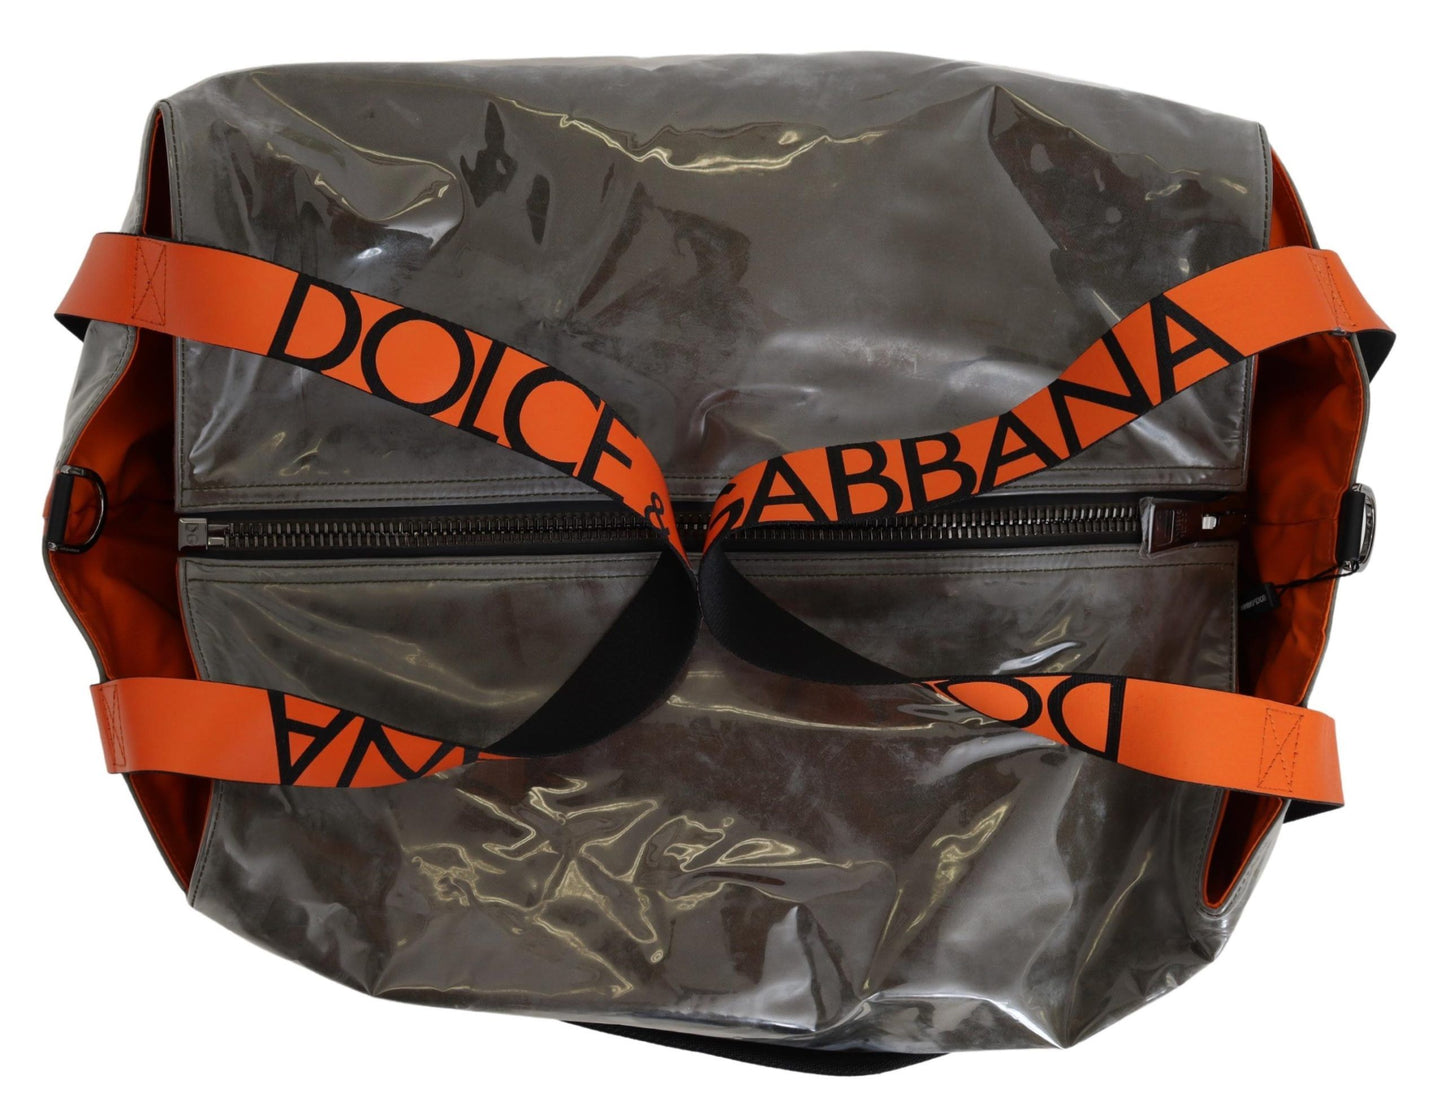 Dolce & Gabbana Baumwollmänner Großer Stoff Green Shopping Tote Tasche